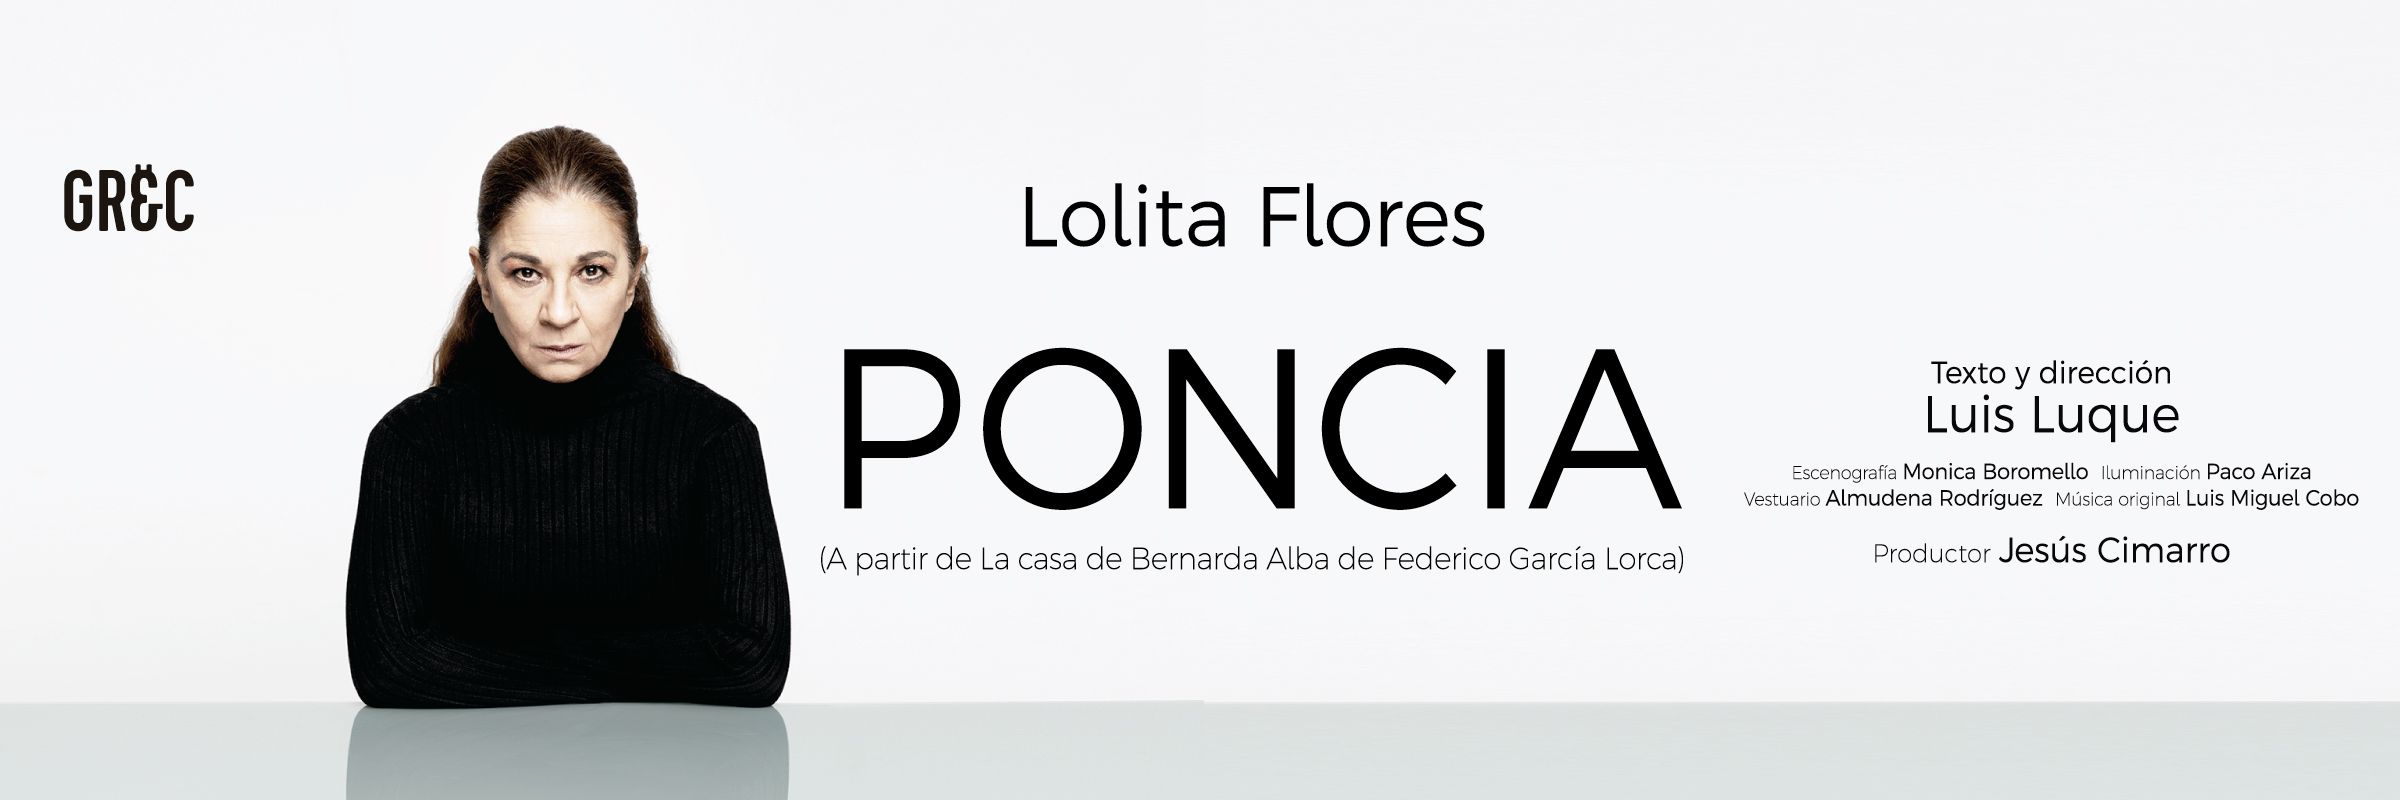 PONCIA BCN